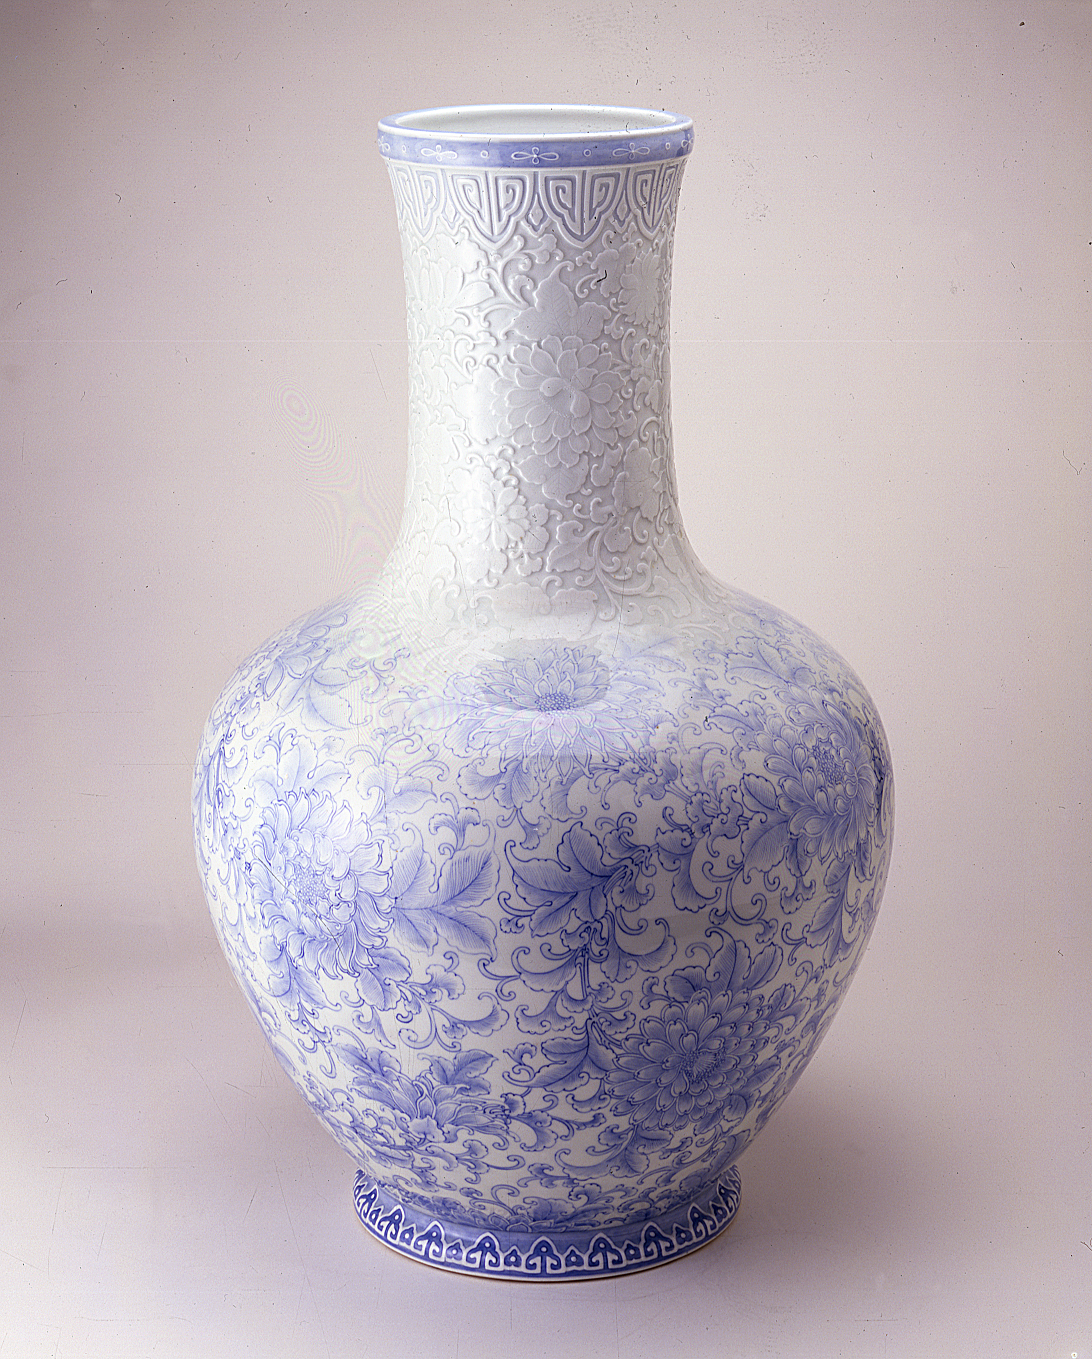 Grande vaso con fiori hōsōge